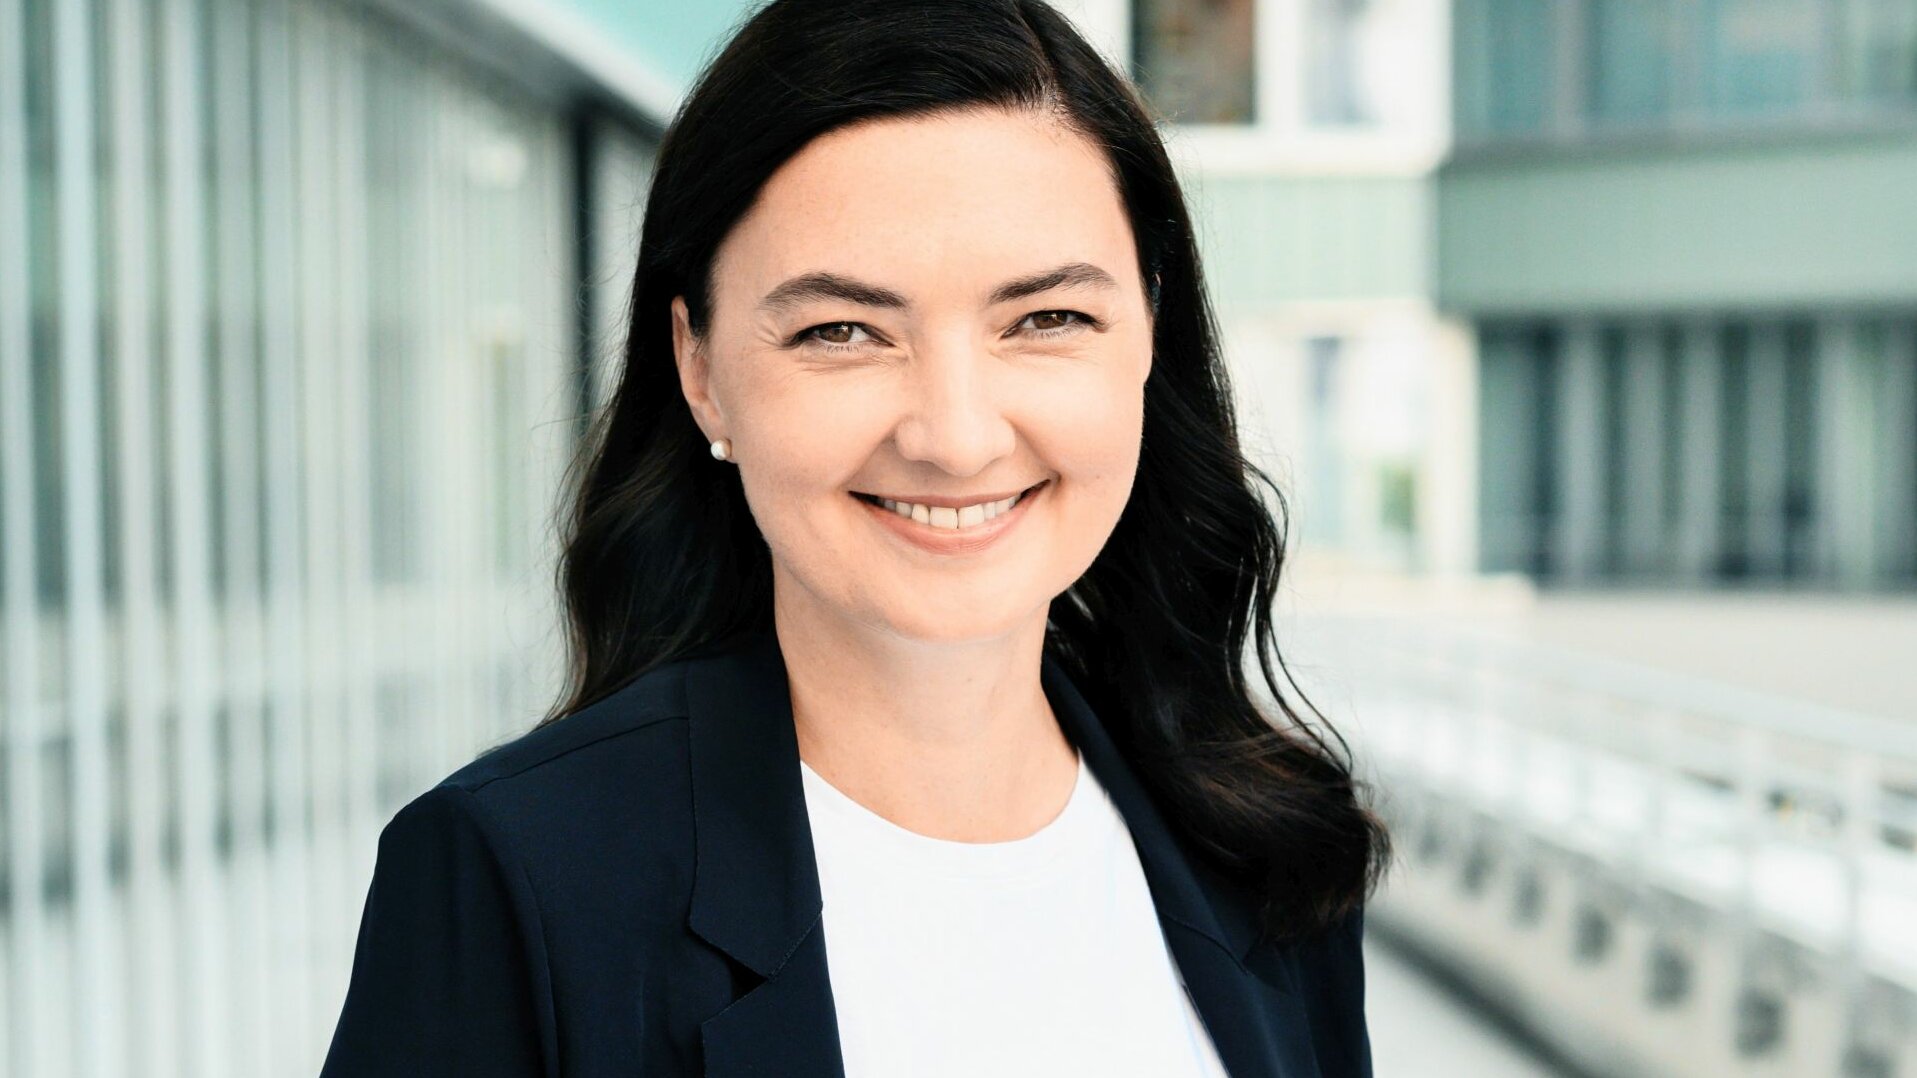 Dr. Alexandra Schröder-Wrusch